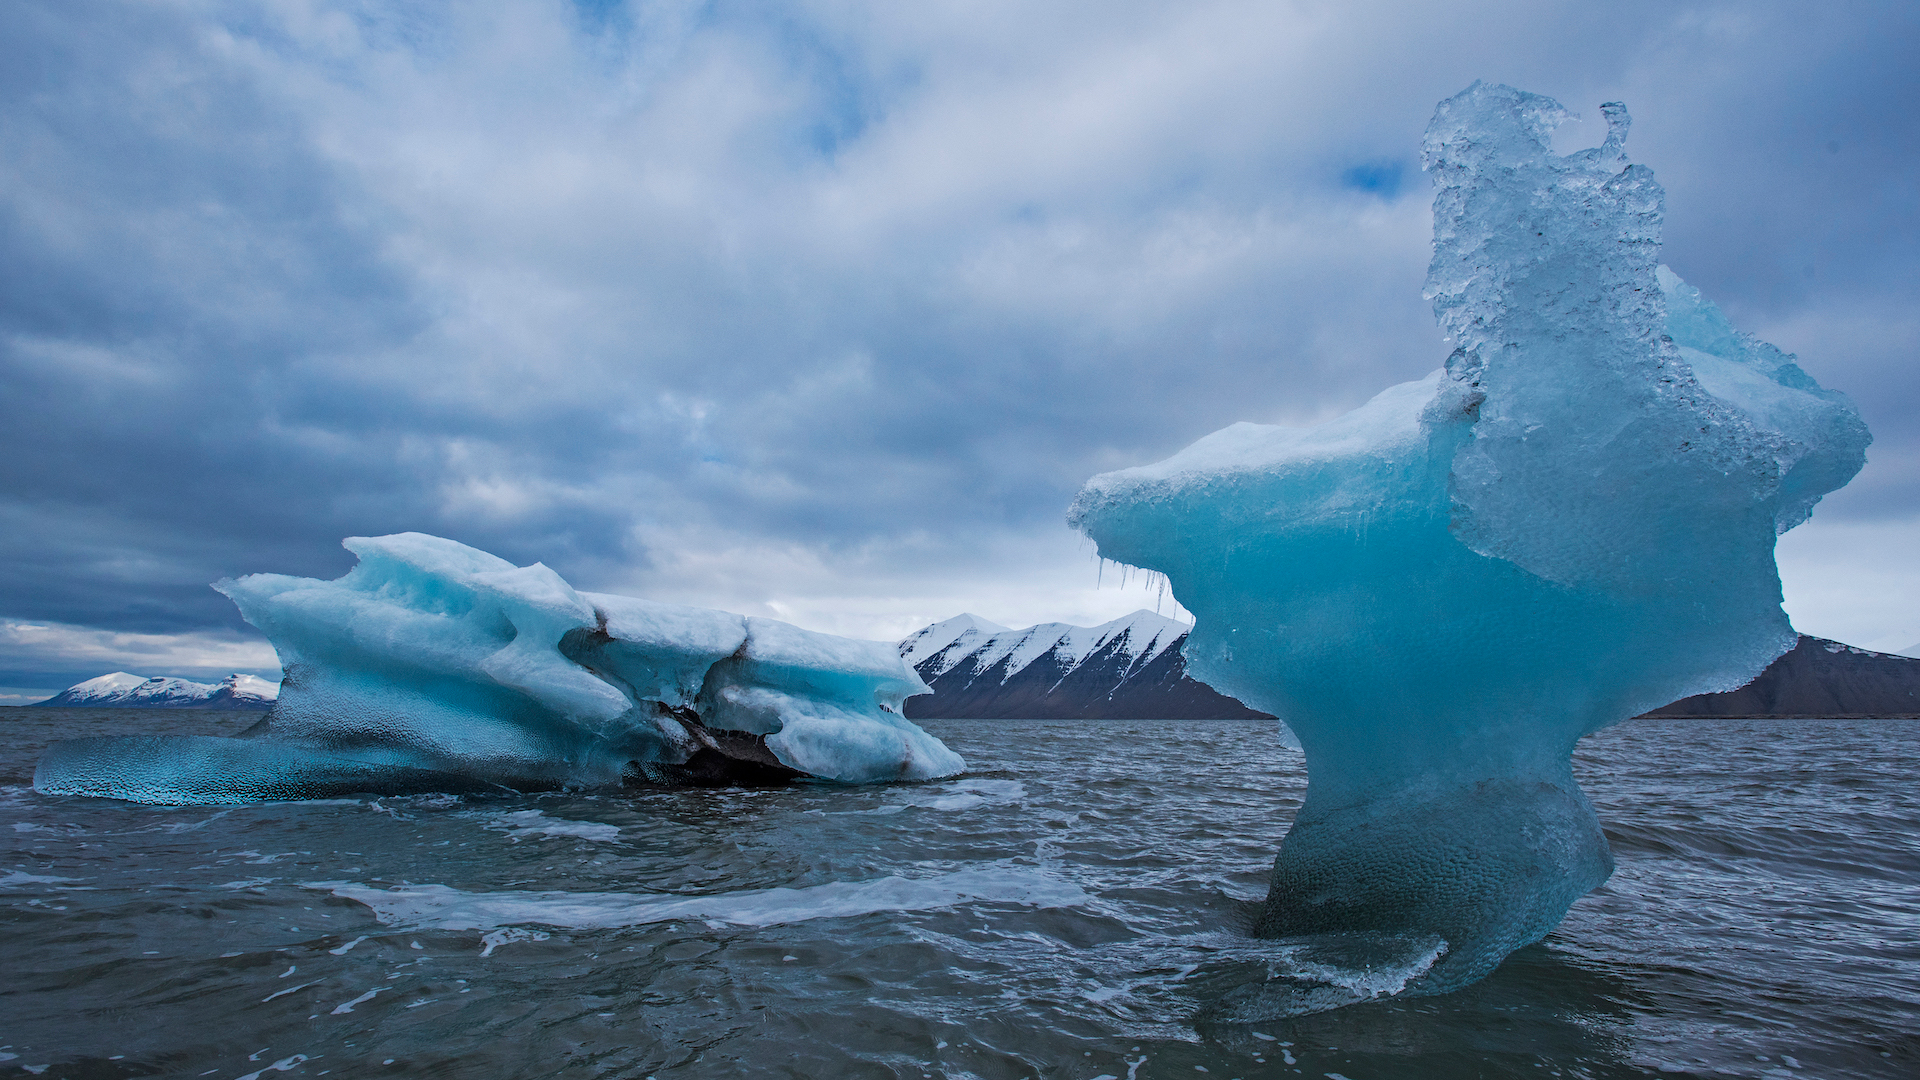 Скачать обои бесплатно Океан, Айсберг, Лёд, Земля/природа, Арктический картинка на рабочий стол ПК